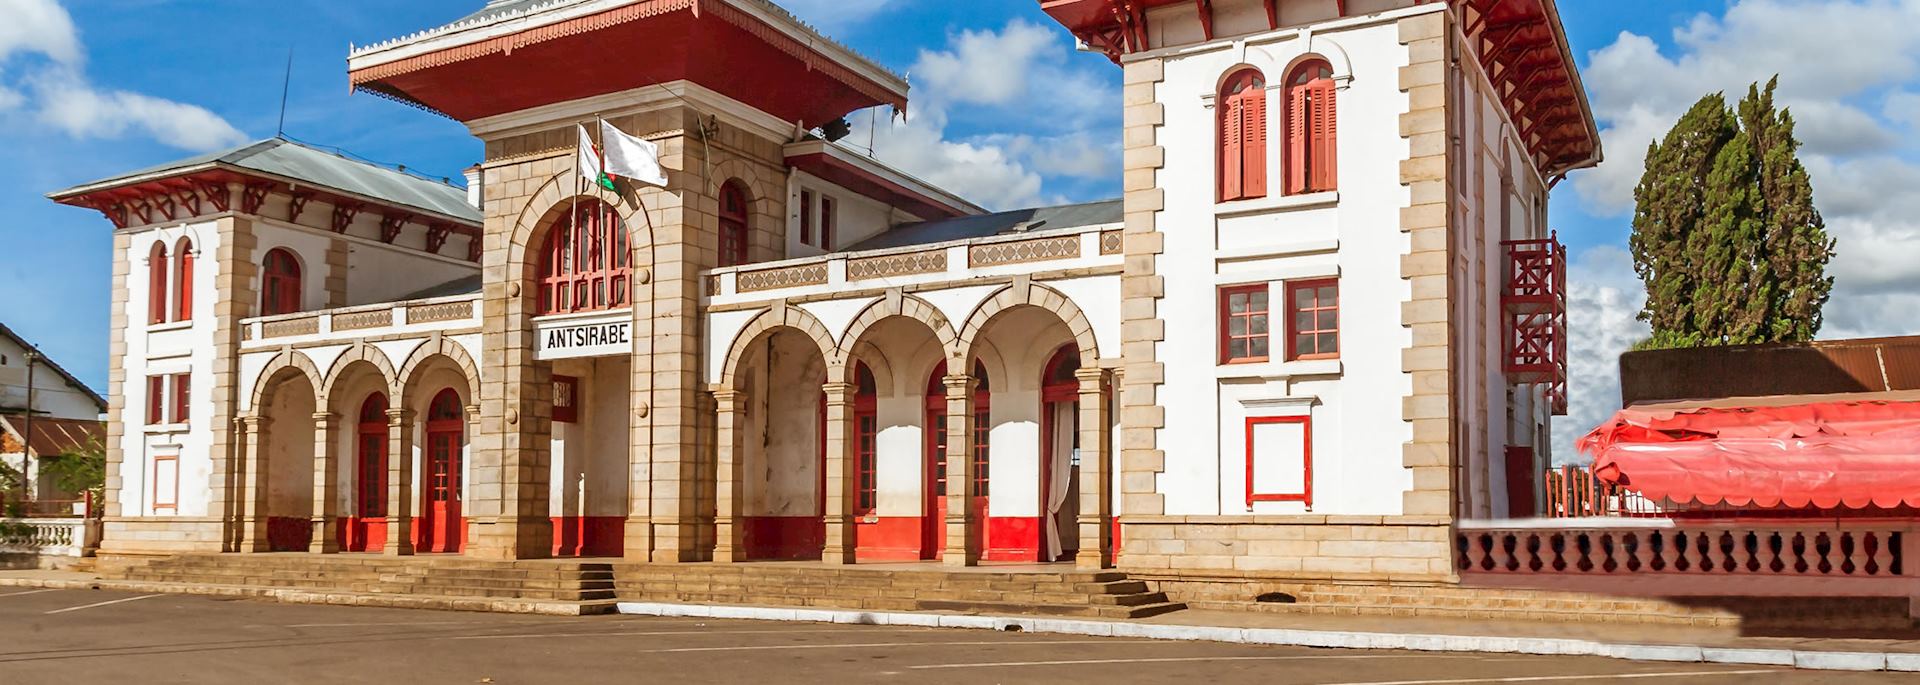 Railway station, Antsirabe